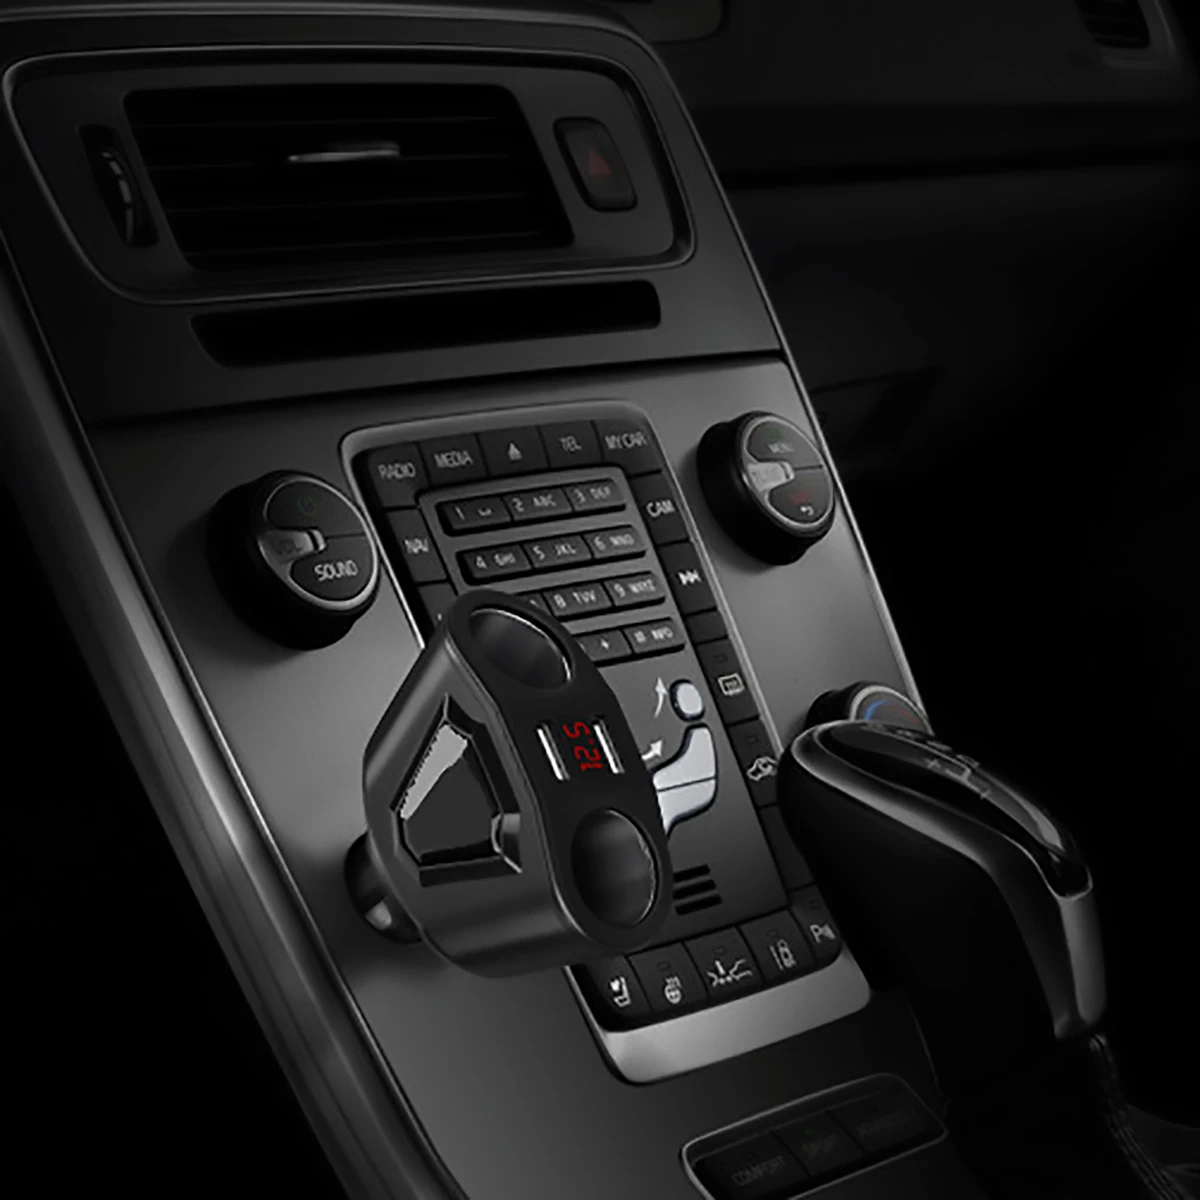 USB Автомобильное зарядное устройство 3.1A автомобильный прикуриватель розетка сплиттер штекер светодиодный адаптер для автомобильного зарядного устройства 90 Вт Обнаружение для телефона MP3 DVR